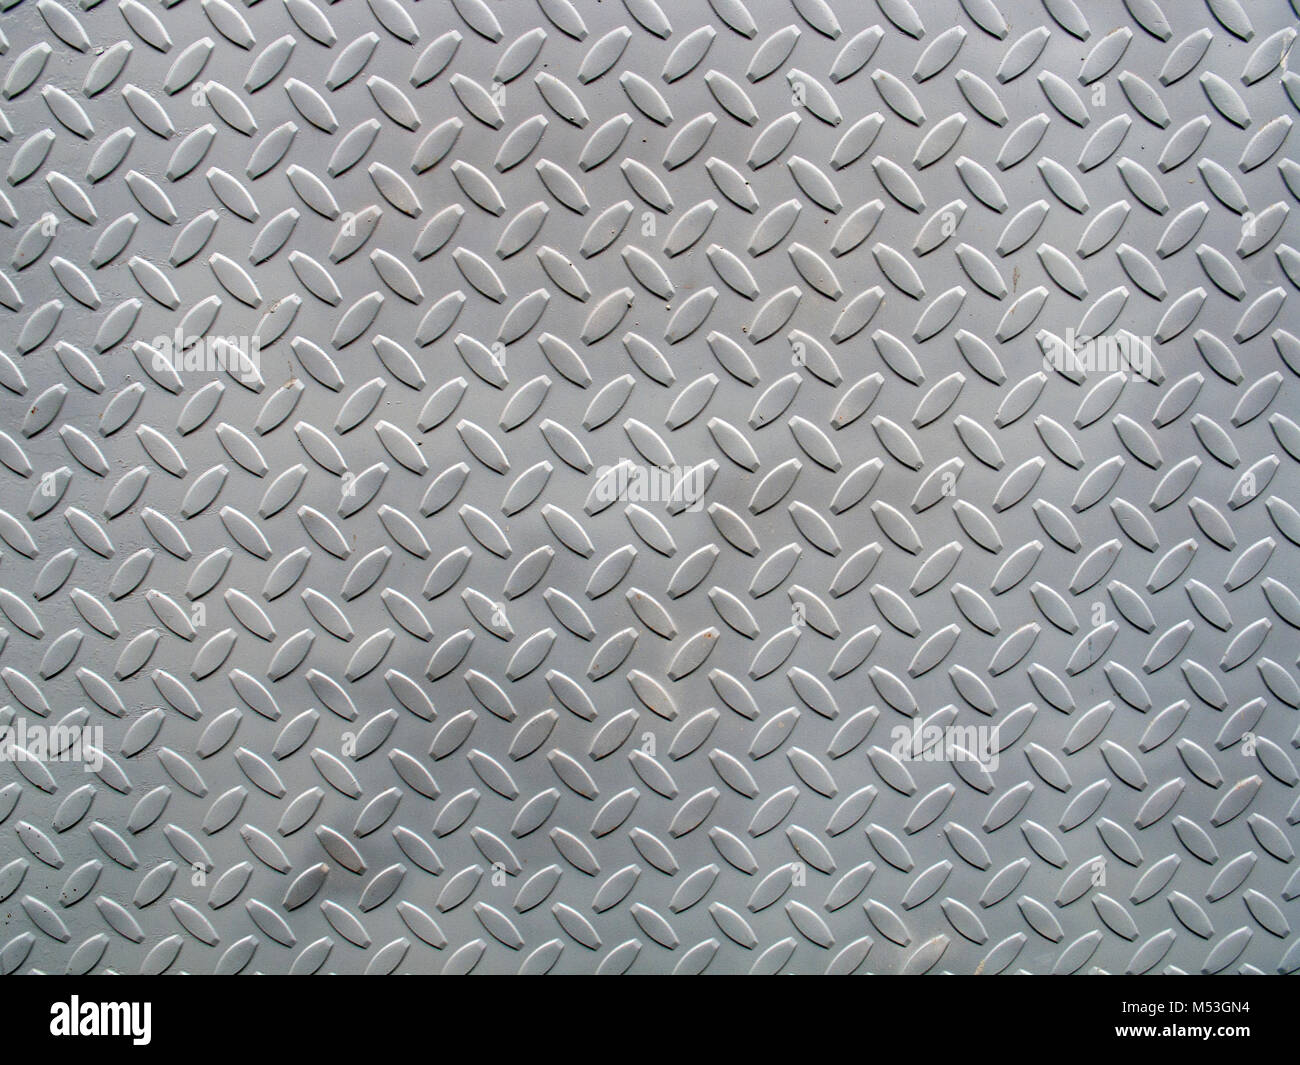 Placa de metal estampado textura, puede ser utilizado como fondo Fotografía de - Alamy